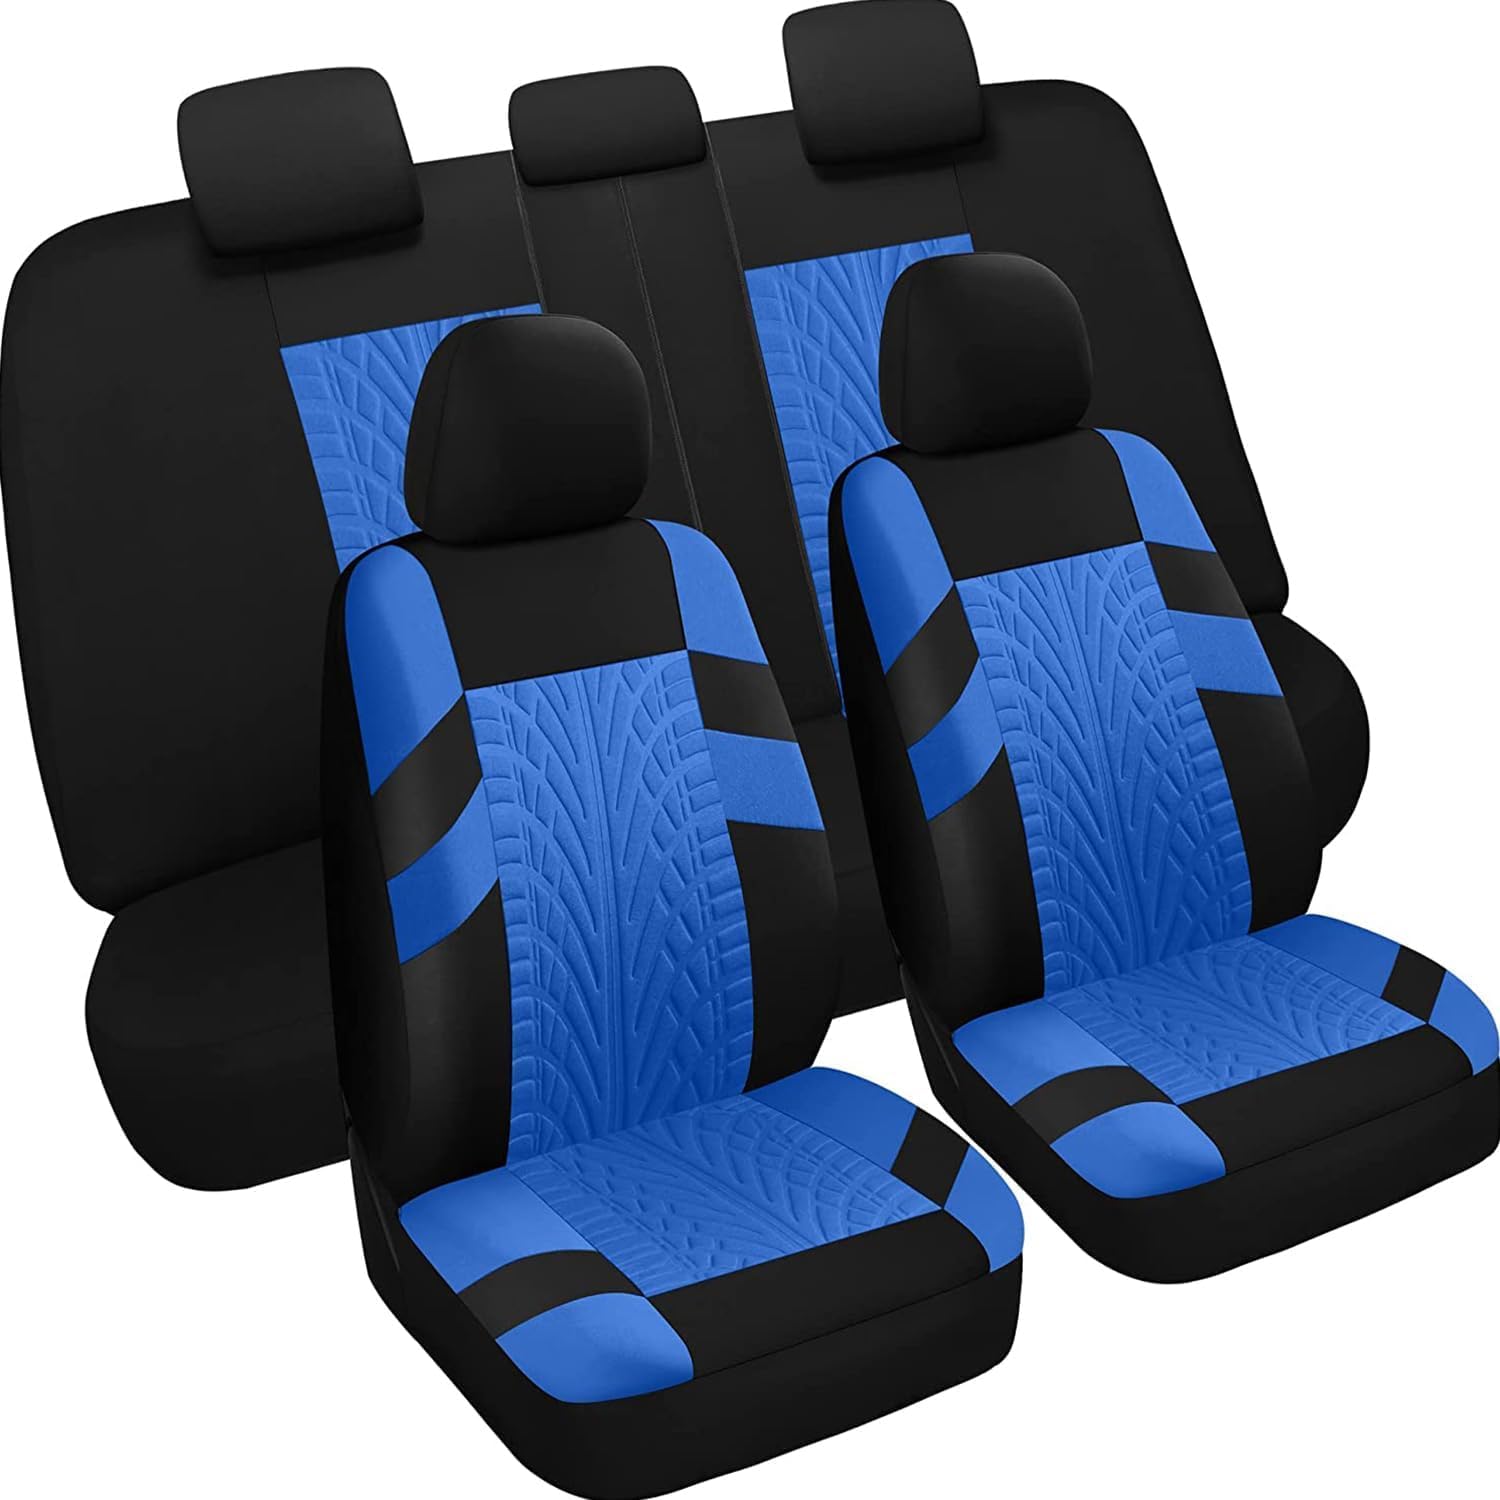 GHUYGTT 9 Stück Sitzbezüge Auto Set für Ren-ault Latitude (Code L70) 2010-2013, Stoff Waschbar Allwetter rutschfest Atmungsaktiv Autositzbezüge Schonbezug Zubehör,C/Blue von GHUYGTT